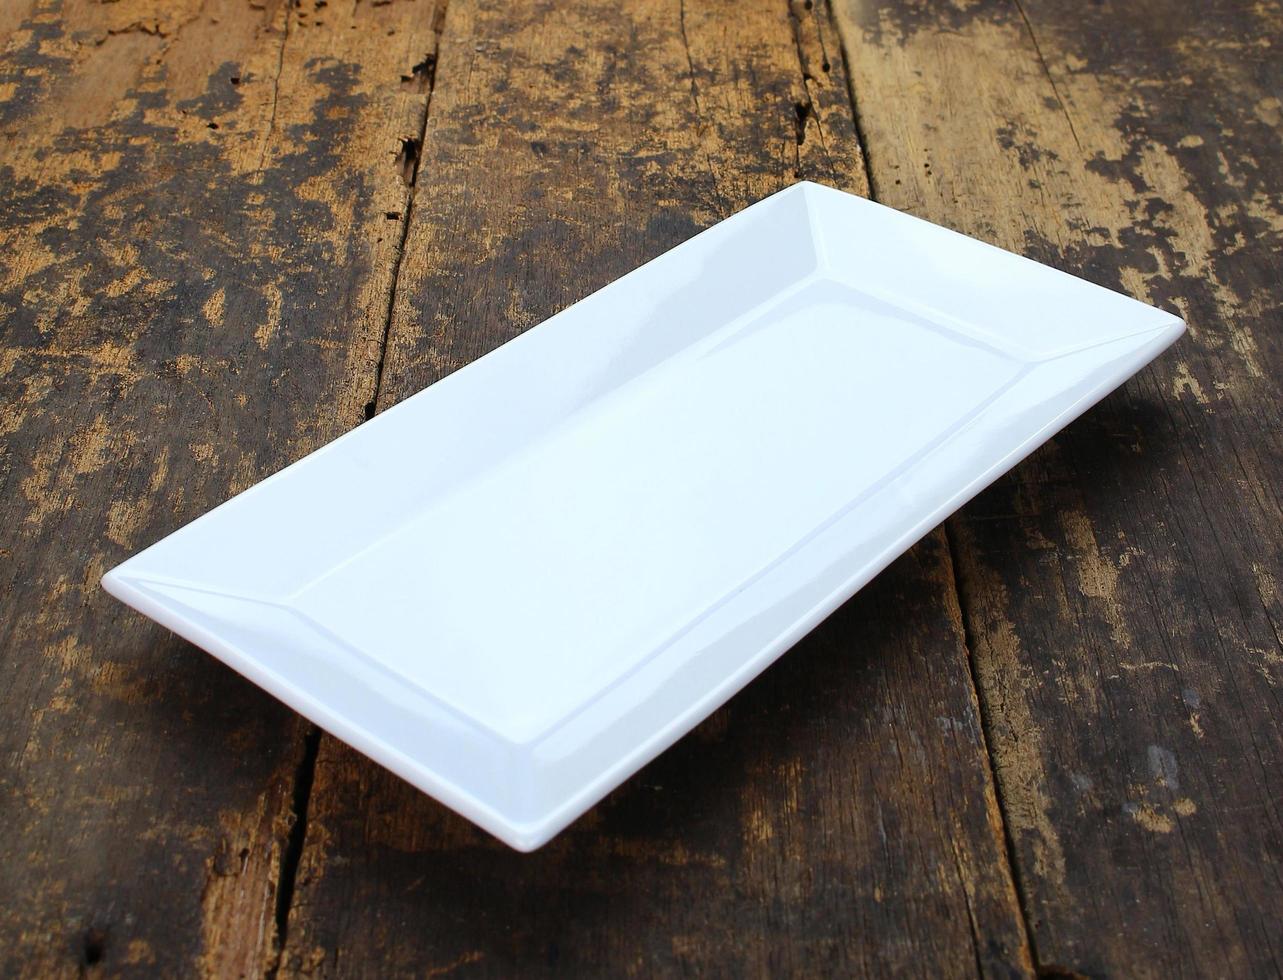 White rectangular plate photo